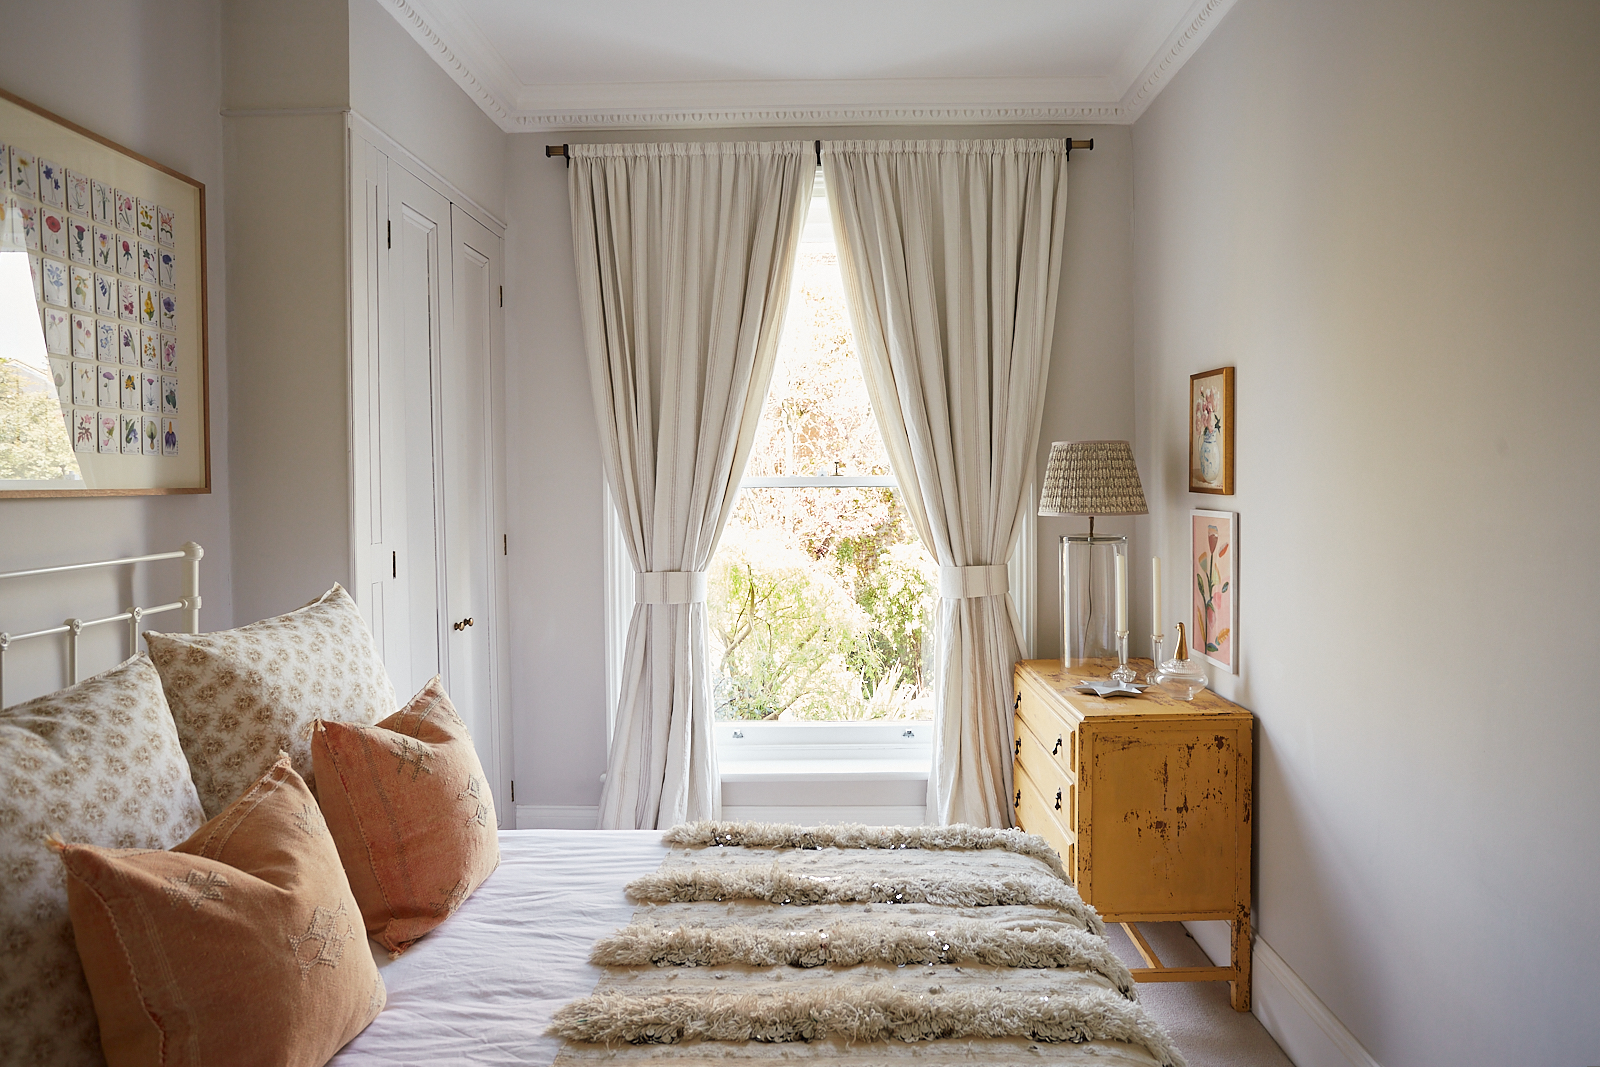 Phòng ngủ thứ hai sử dụng sơn tường màu xám nhạt, trần màu trắng cùng những điểm nhấn màu cam gạch nổi bật. Căn phòng mang phong cách đồng quê, nhìn ra khung cửa sổ với cây cối bên ngoài cực kỳ lãng mạn.